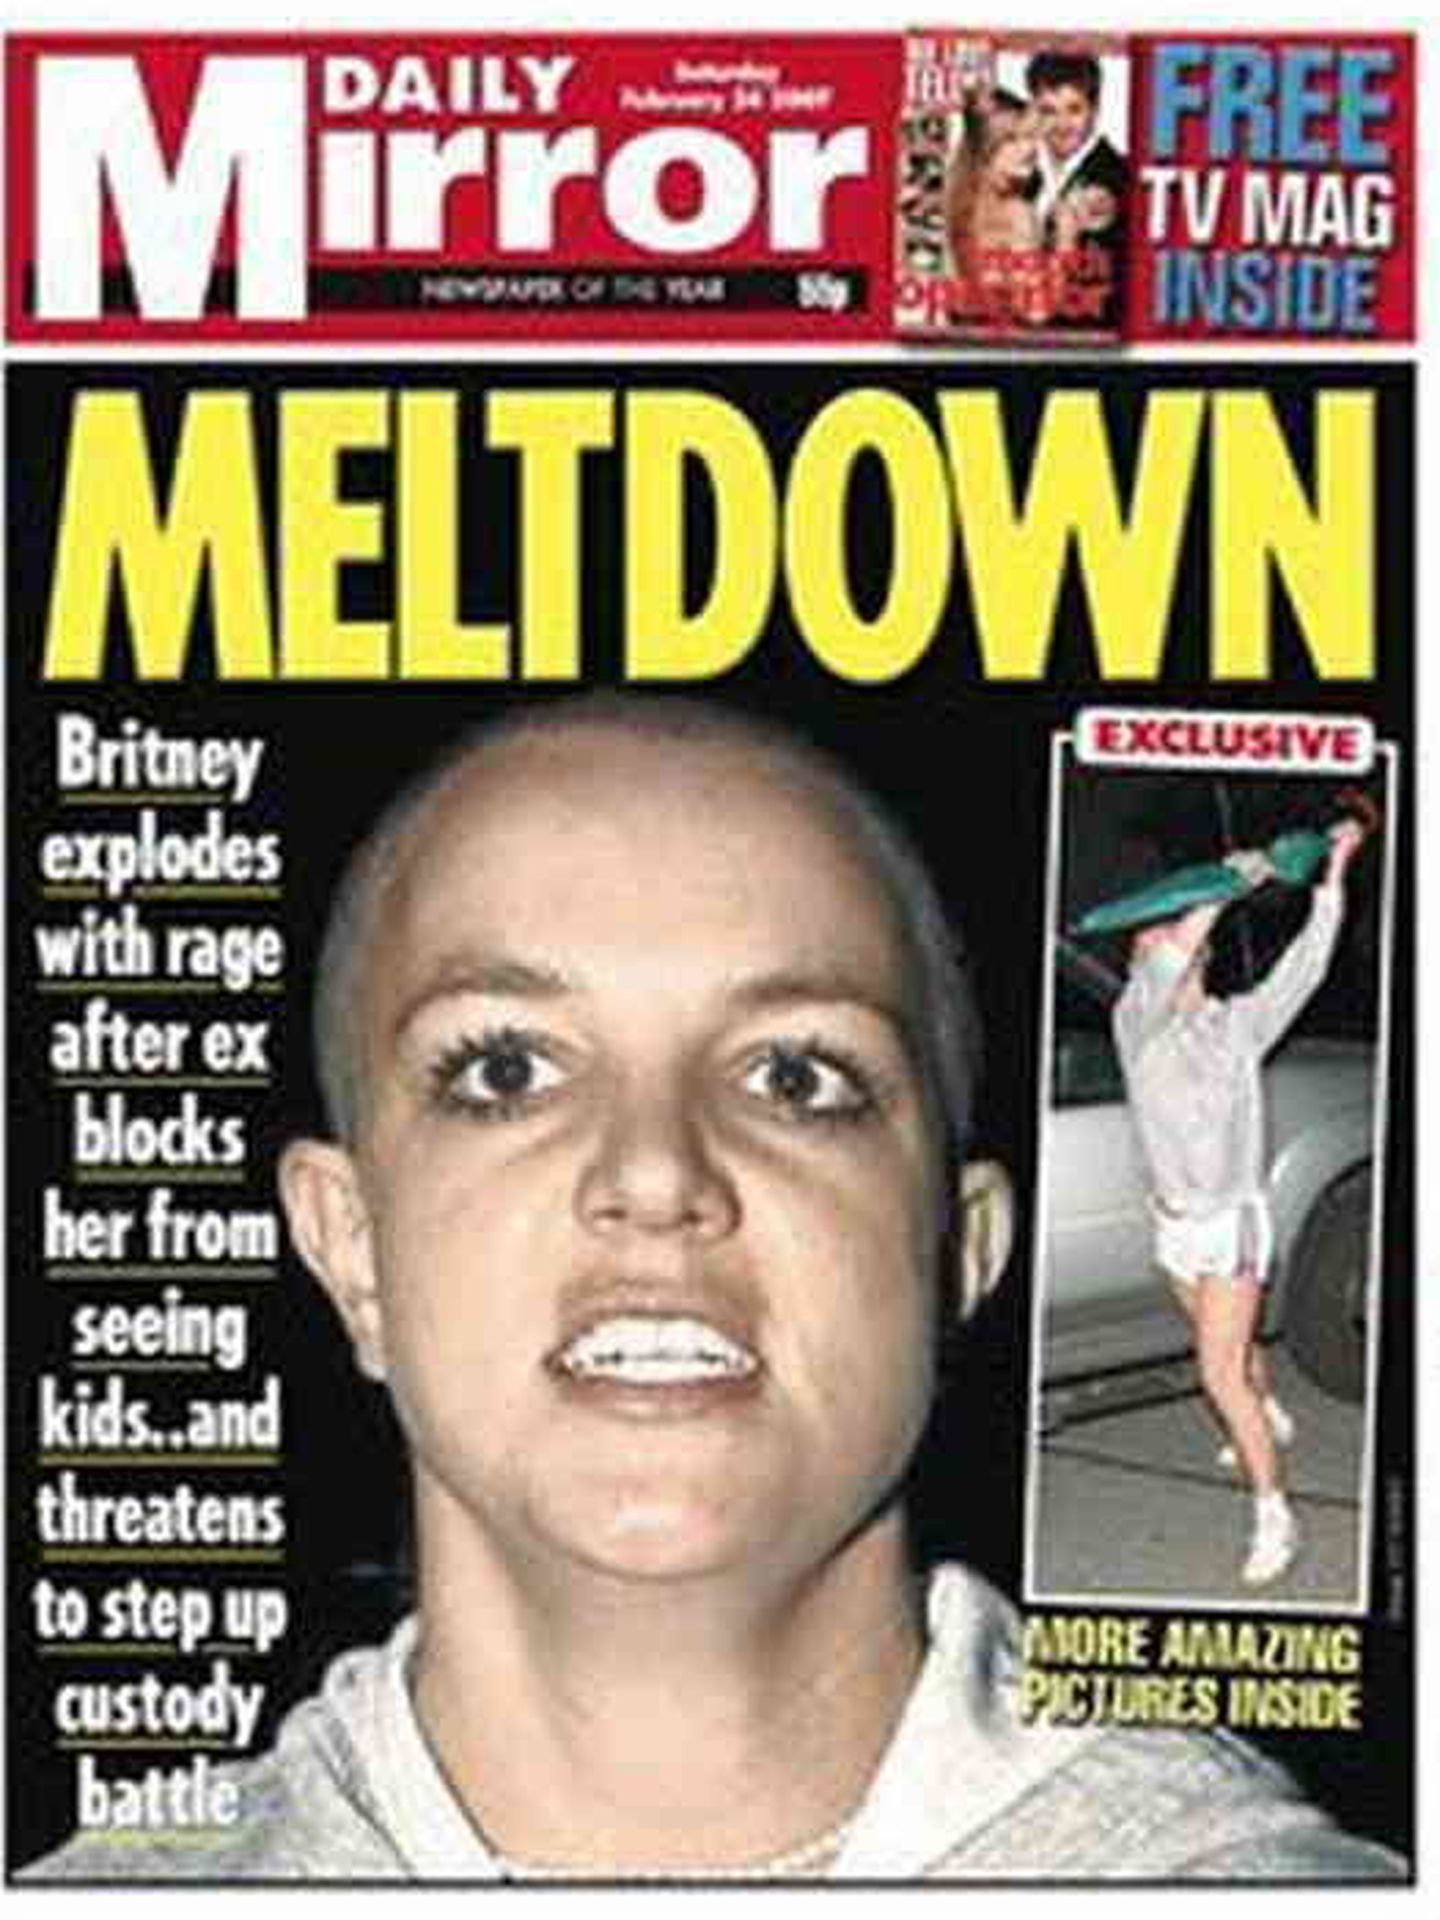 Britney Spears con el cabello rapado en a portada del Daily Mirror en 2007. (Daily Mirror)